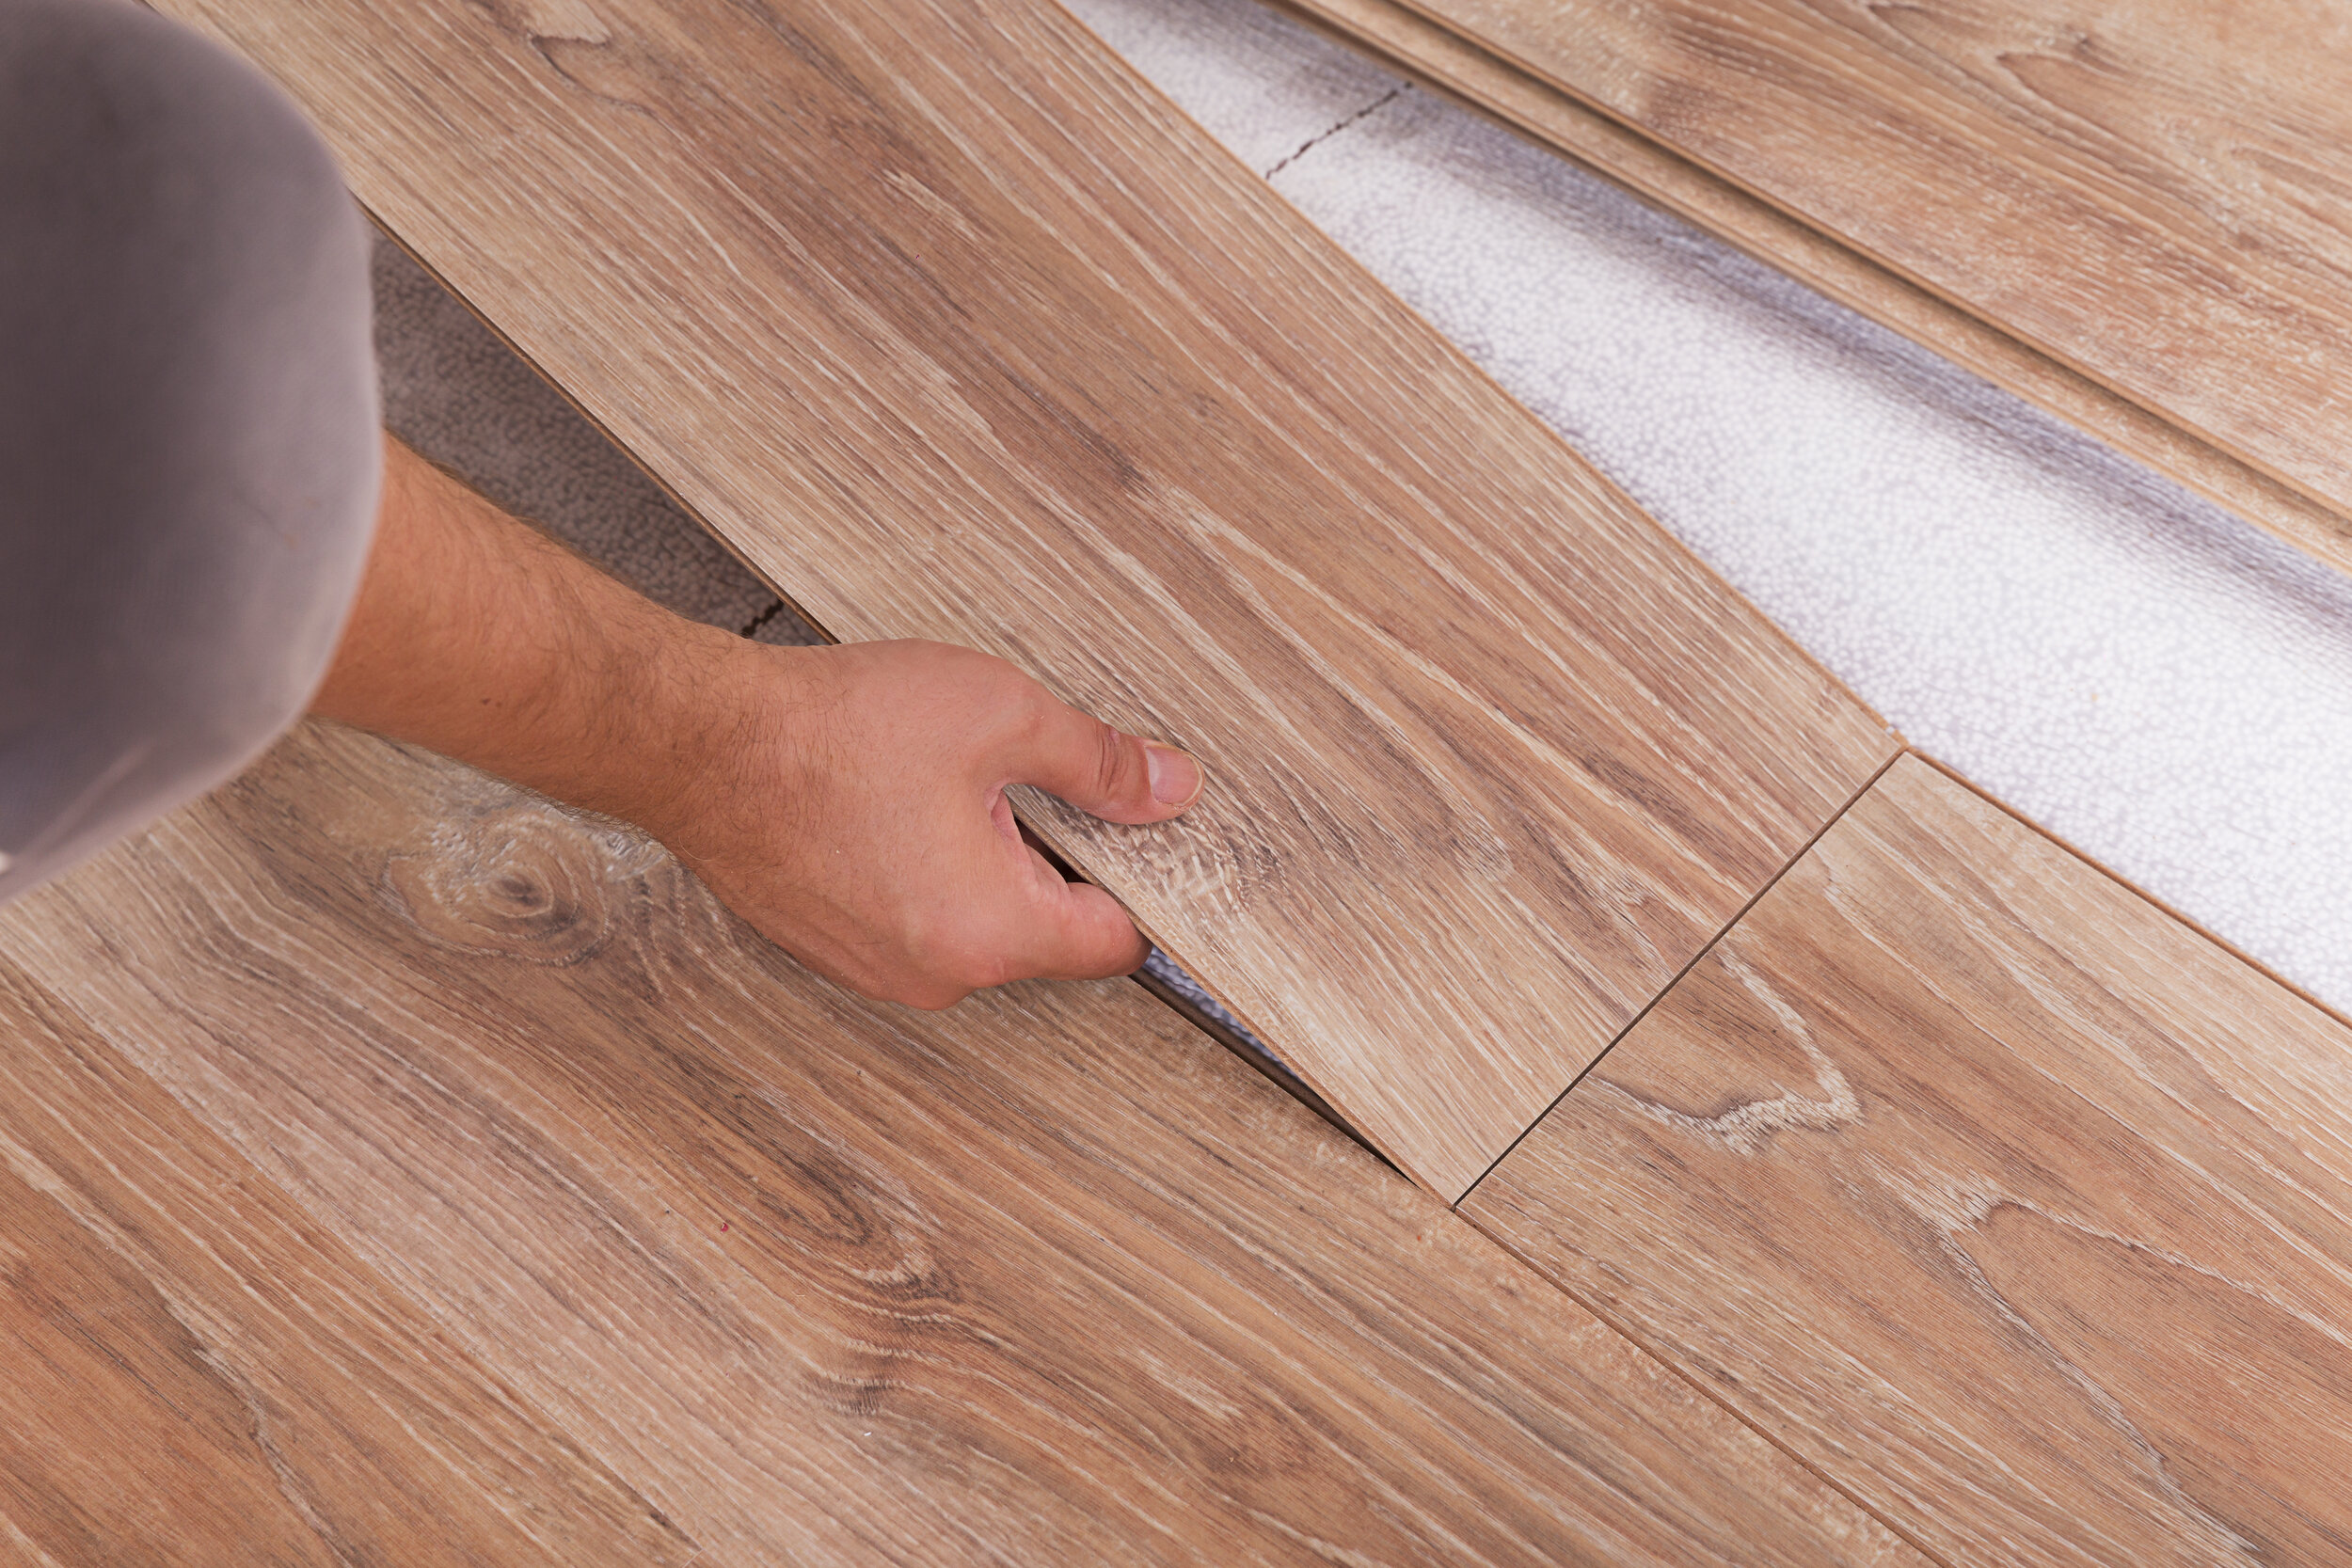 Waterproof Laminate Flooring, Installing Laminate Plank Flooring In Bathroom